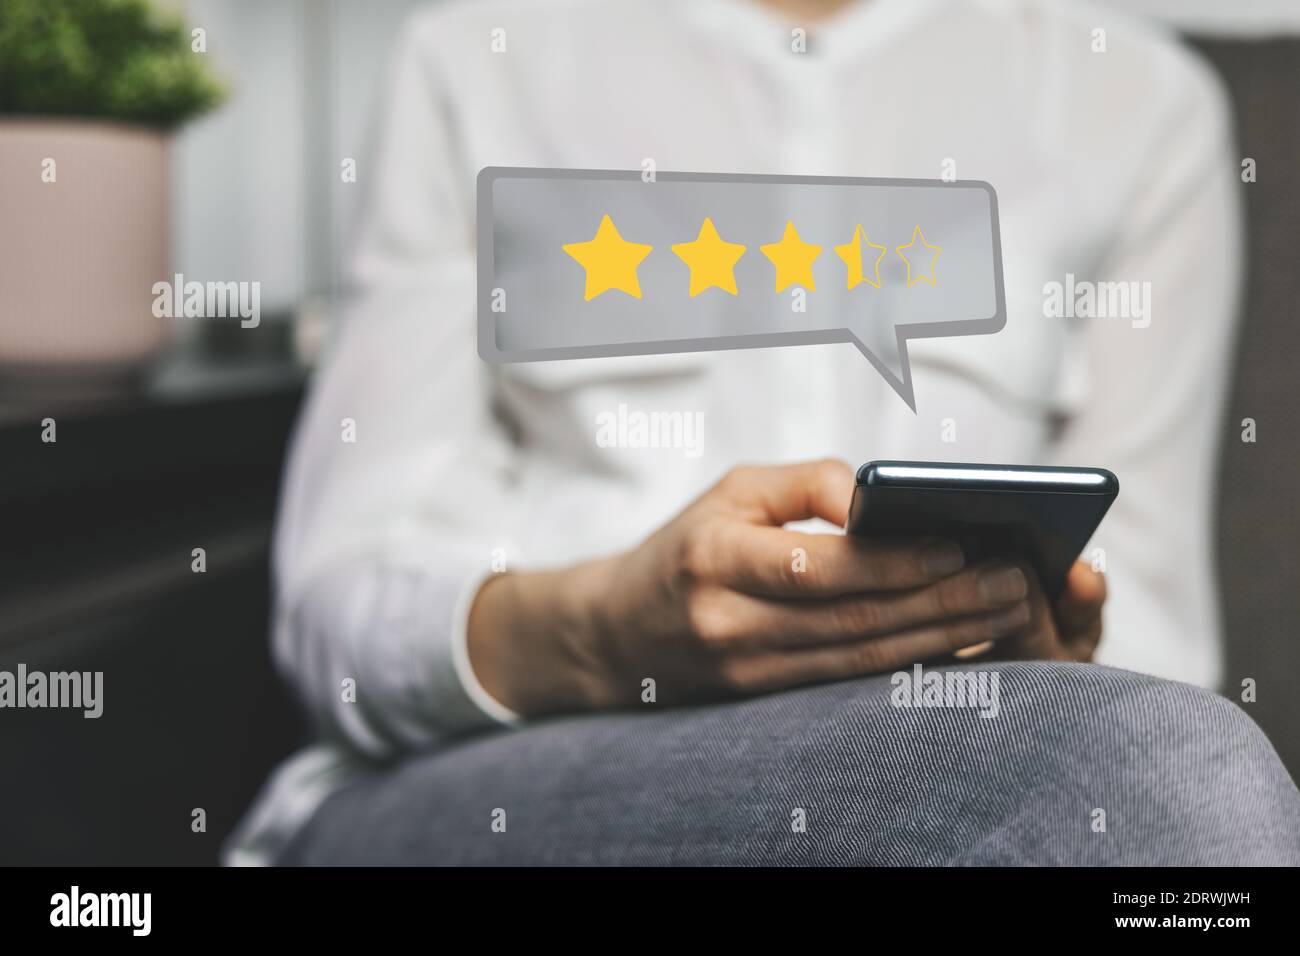 Kundenbewertung – Frau, die telefonisch Feedback gibt und Bewerten Sie ihre Erfahrungen mit Stars in Bezug auf Service oder Produktqualität Stockfoto